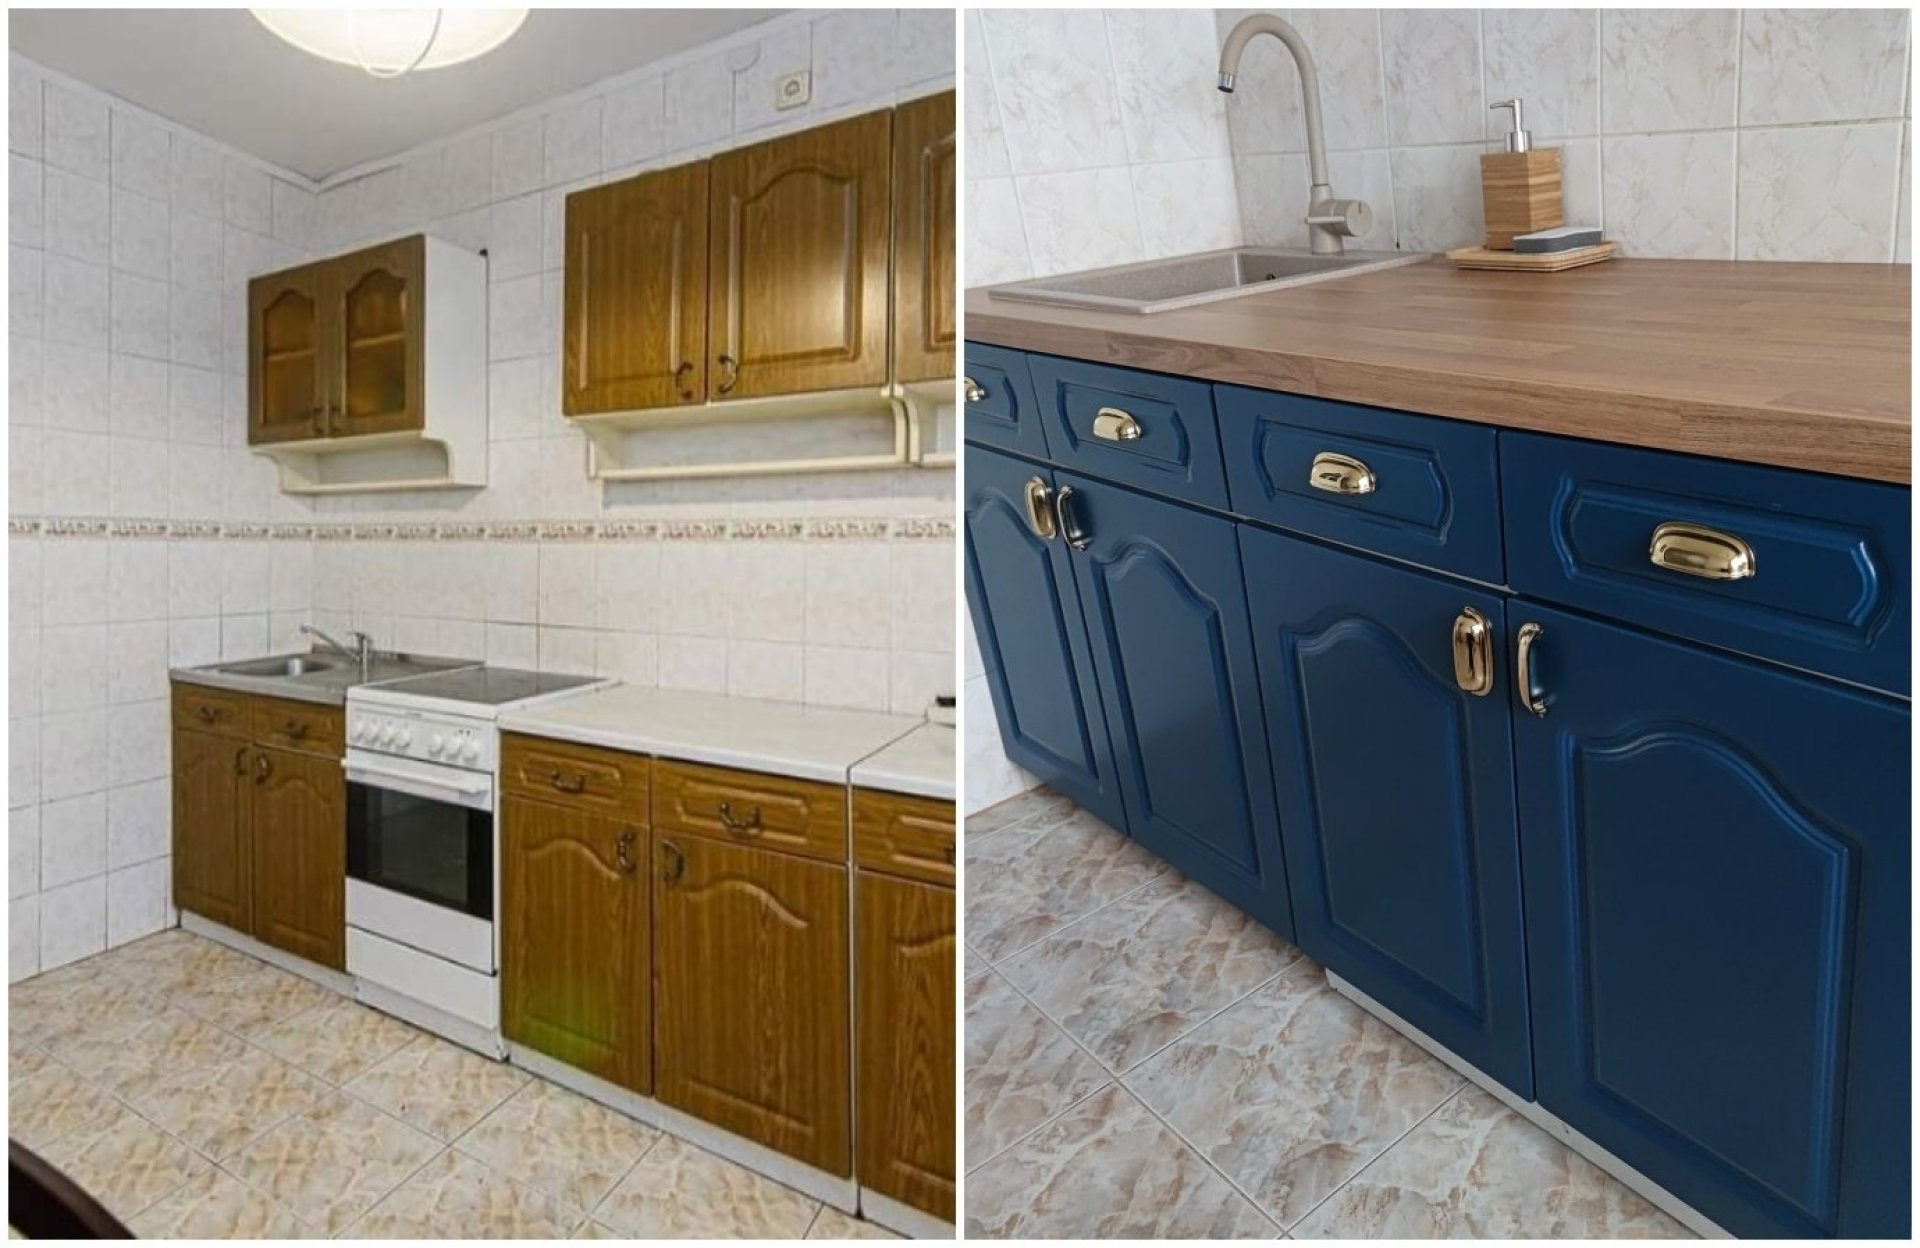 Virtuvė prieš ir po